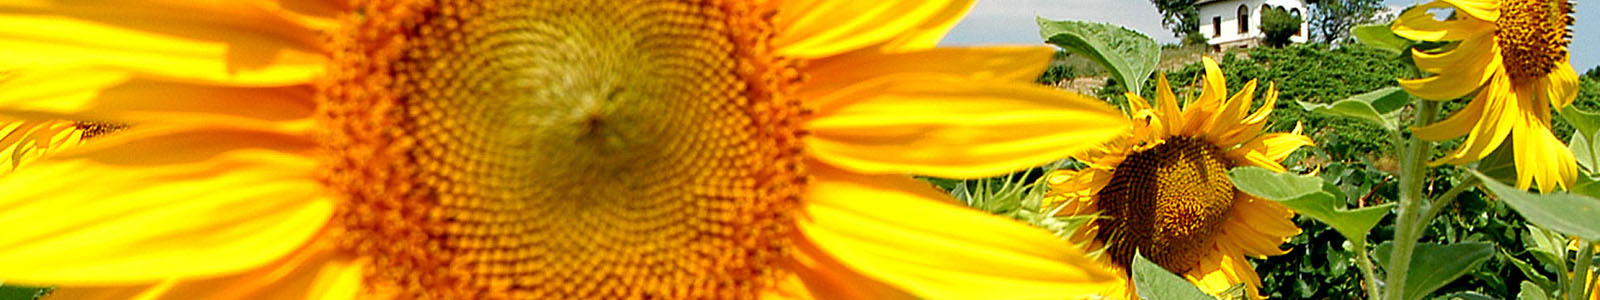 Sonnenblume in Großaufnahme ©Feuerbach